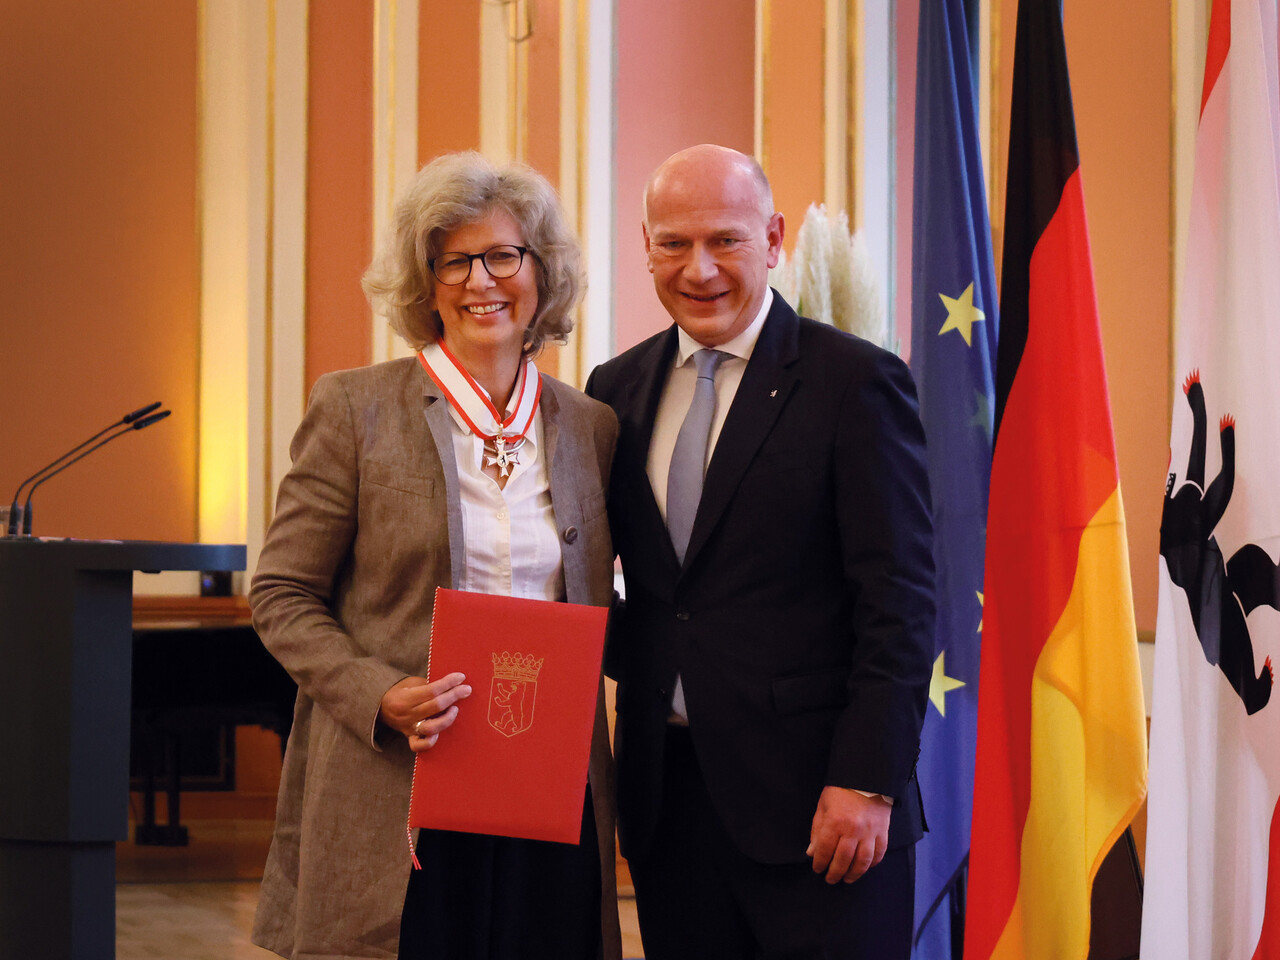 Alexandra Knauer and the Governing Mayor of Berlin Kai Wegner